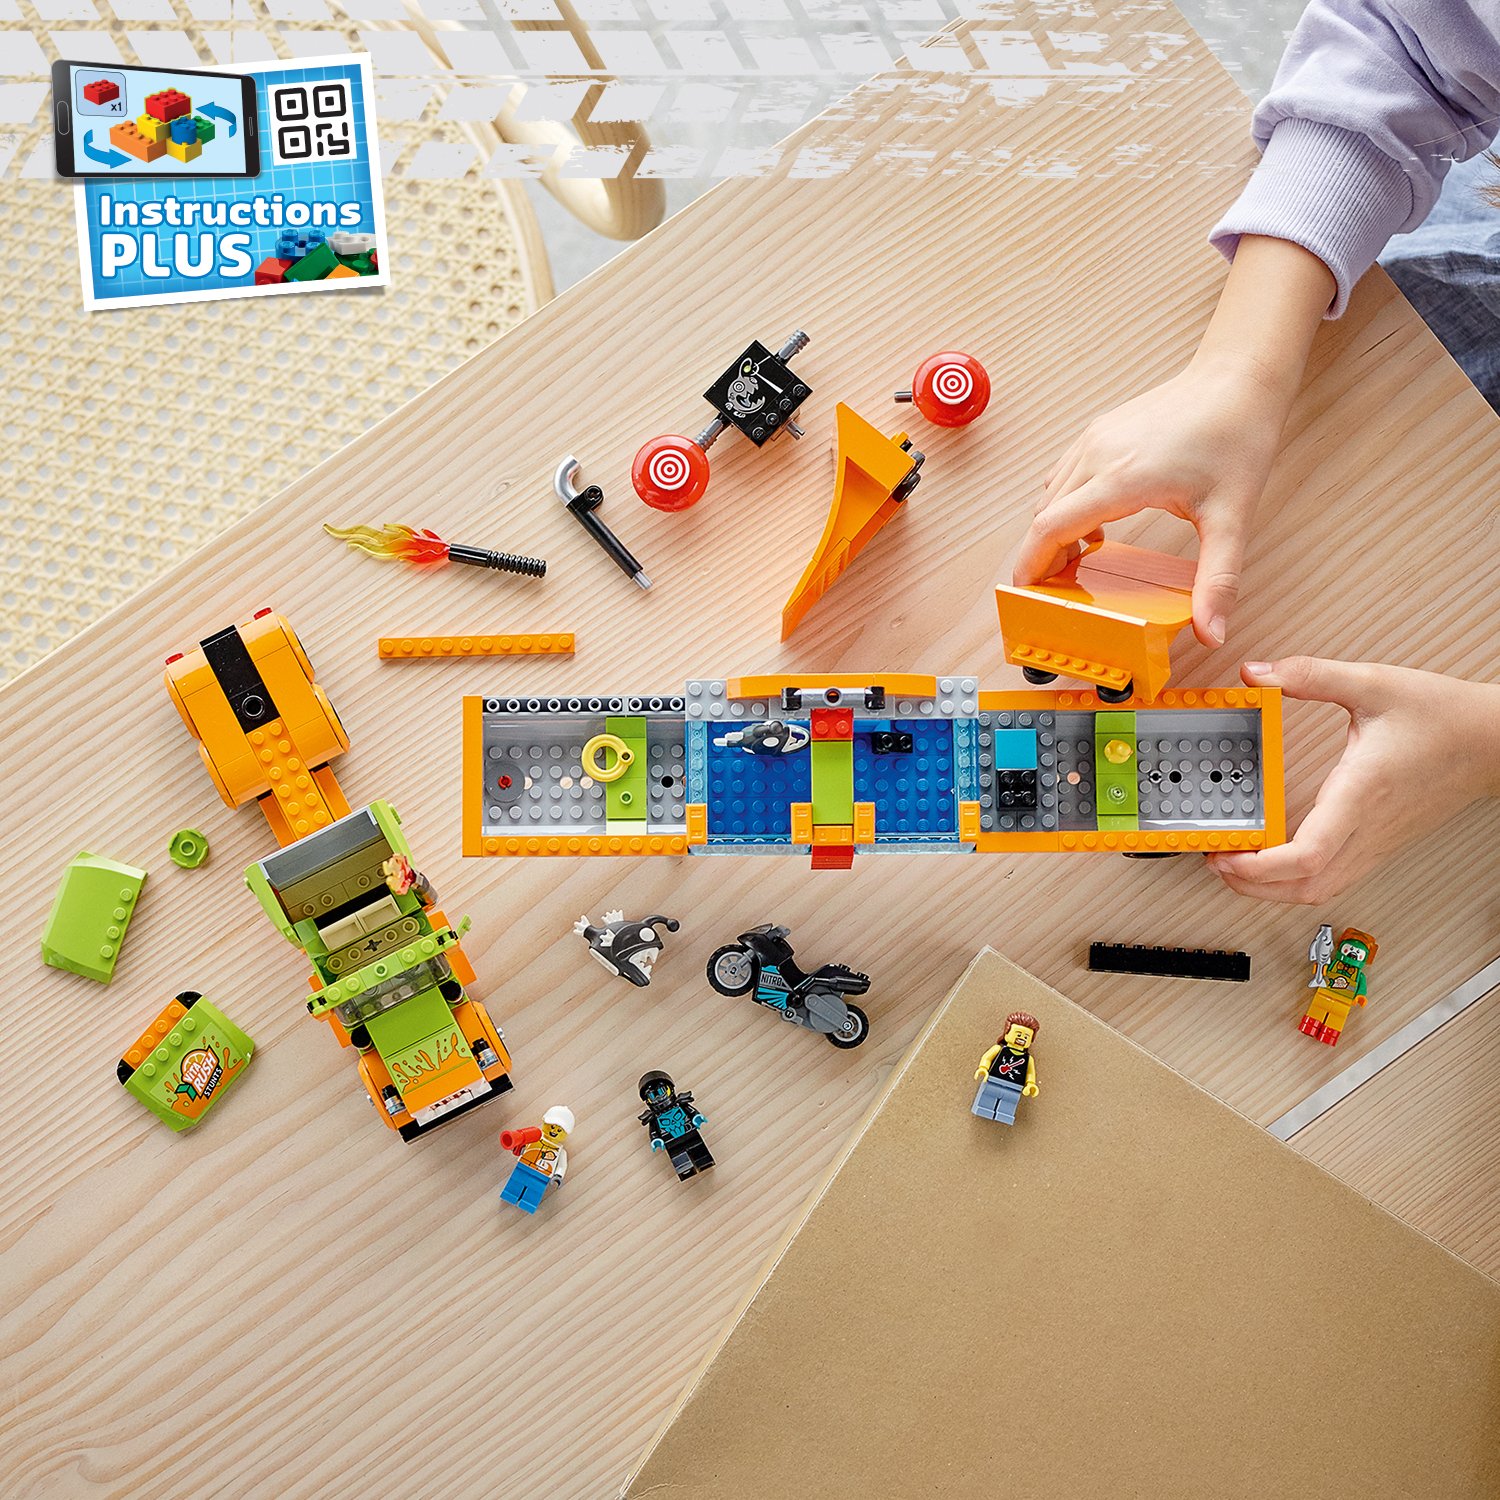 Конструктор LEGO City 60294 Грузовик для шоу каскадёров